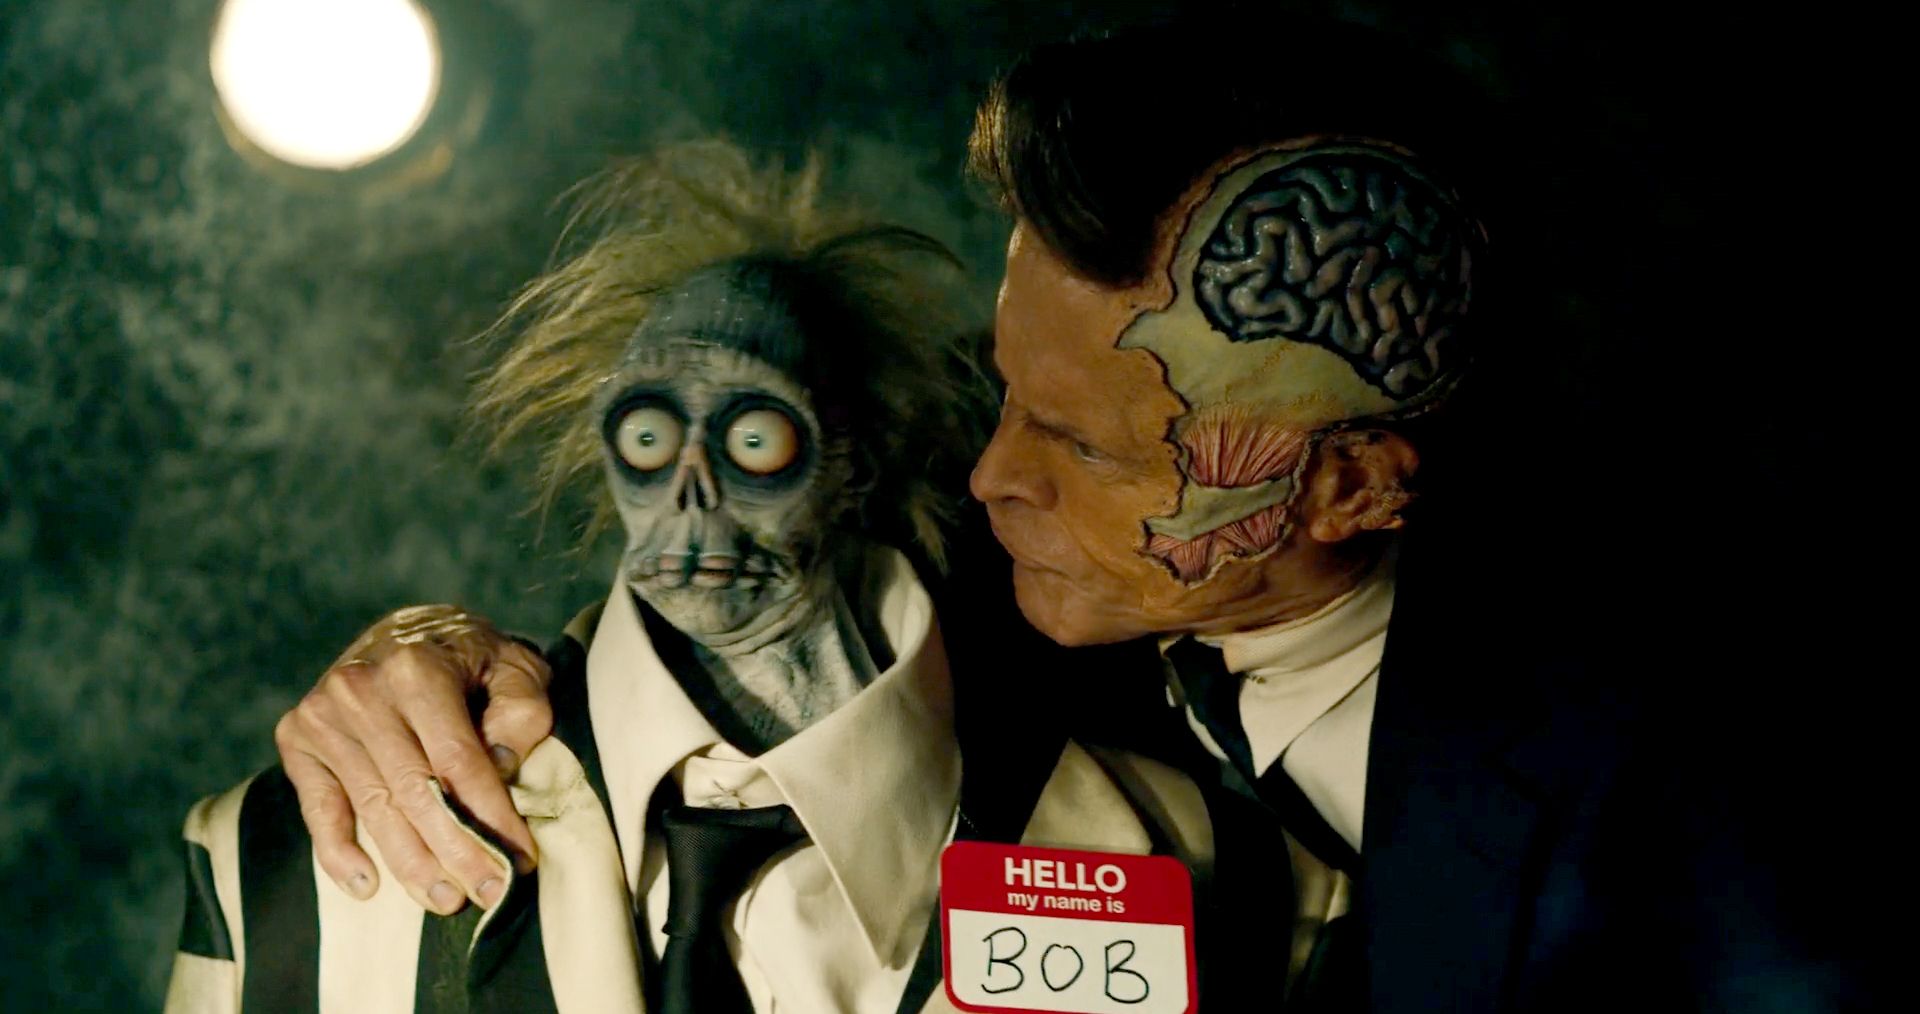 «Битлджус 2» впервые показал мертвого персонажа Уиллема Дефо в новом трейлере